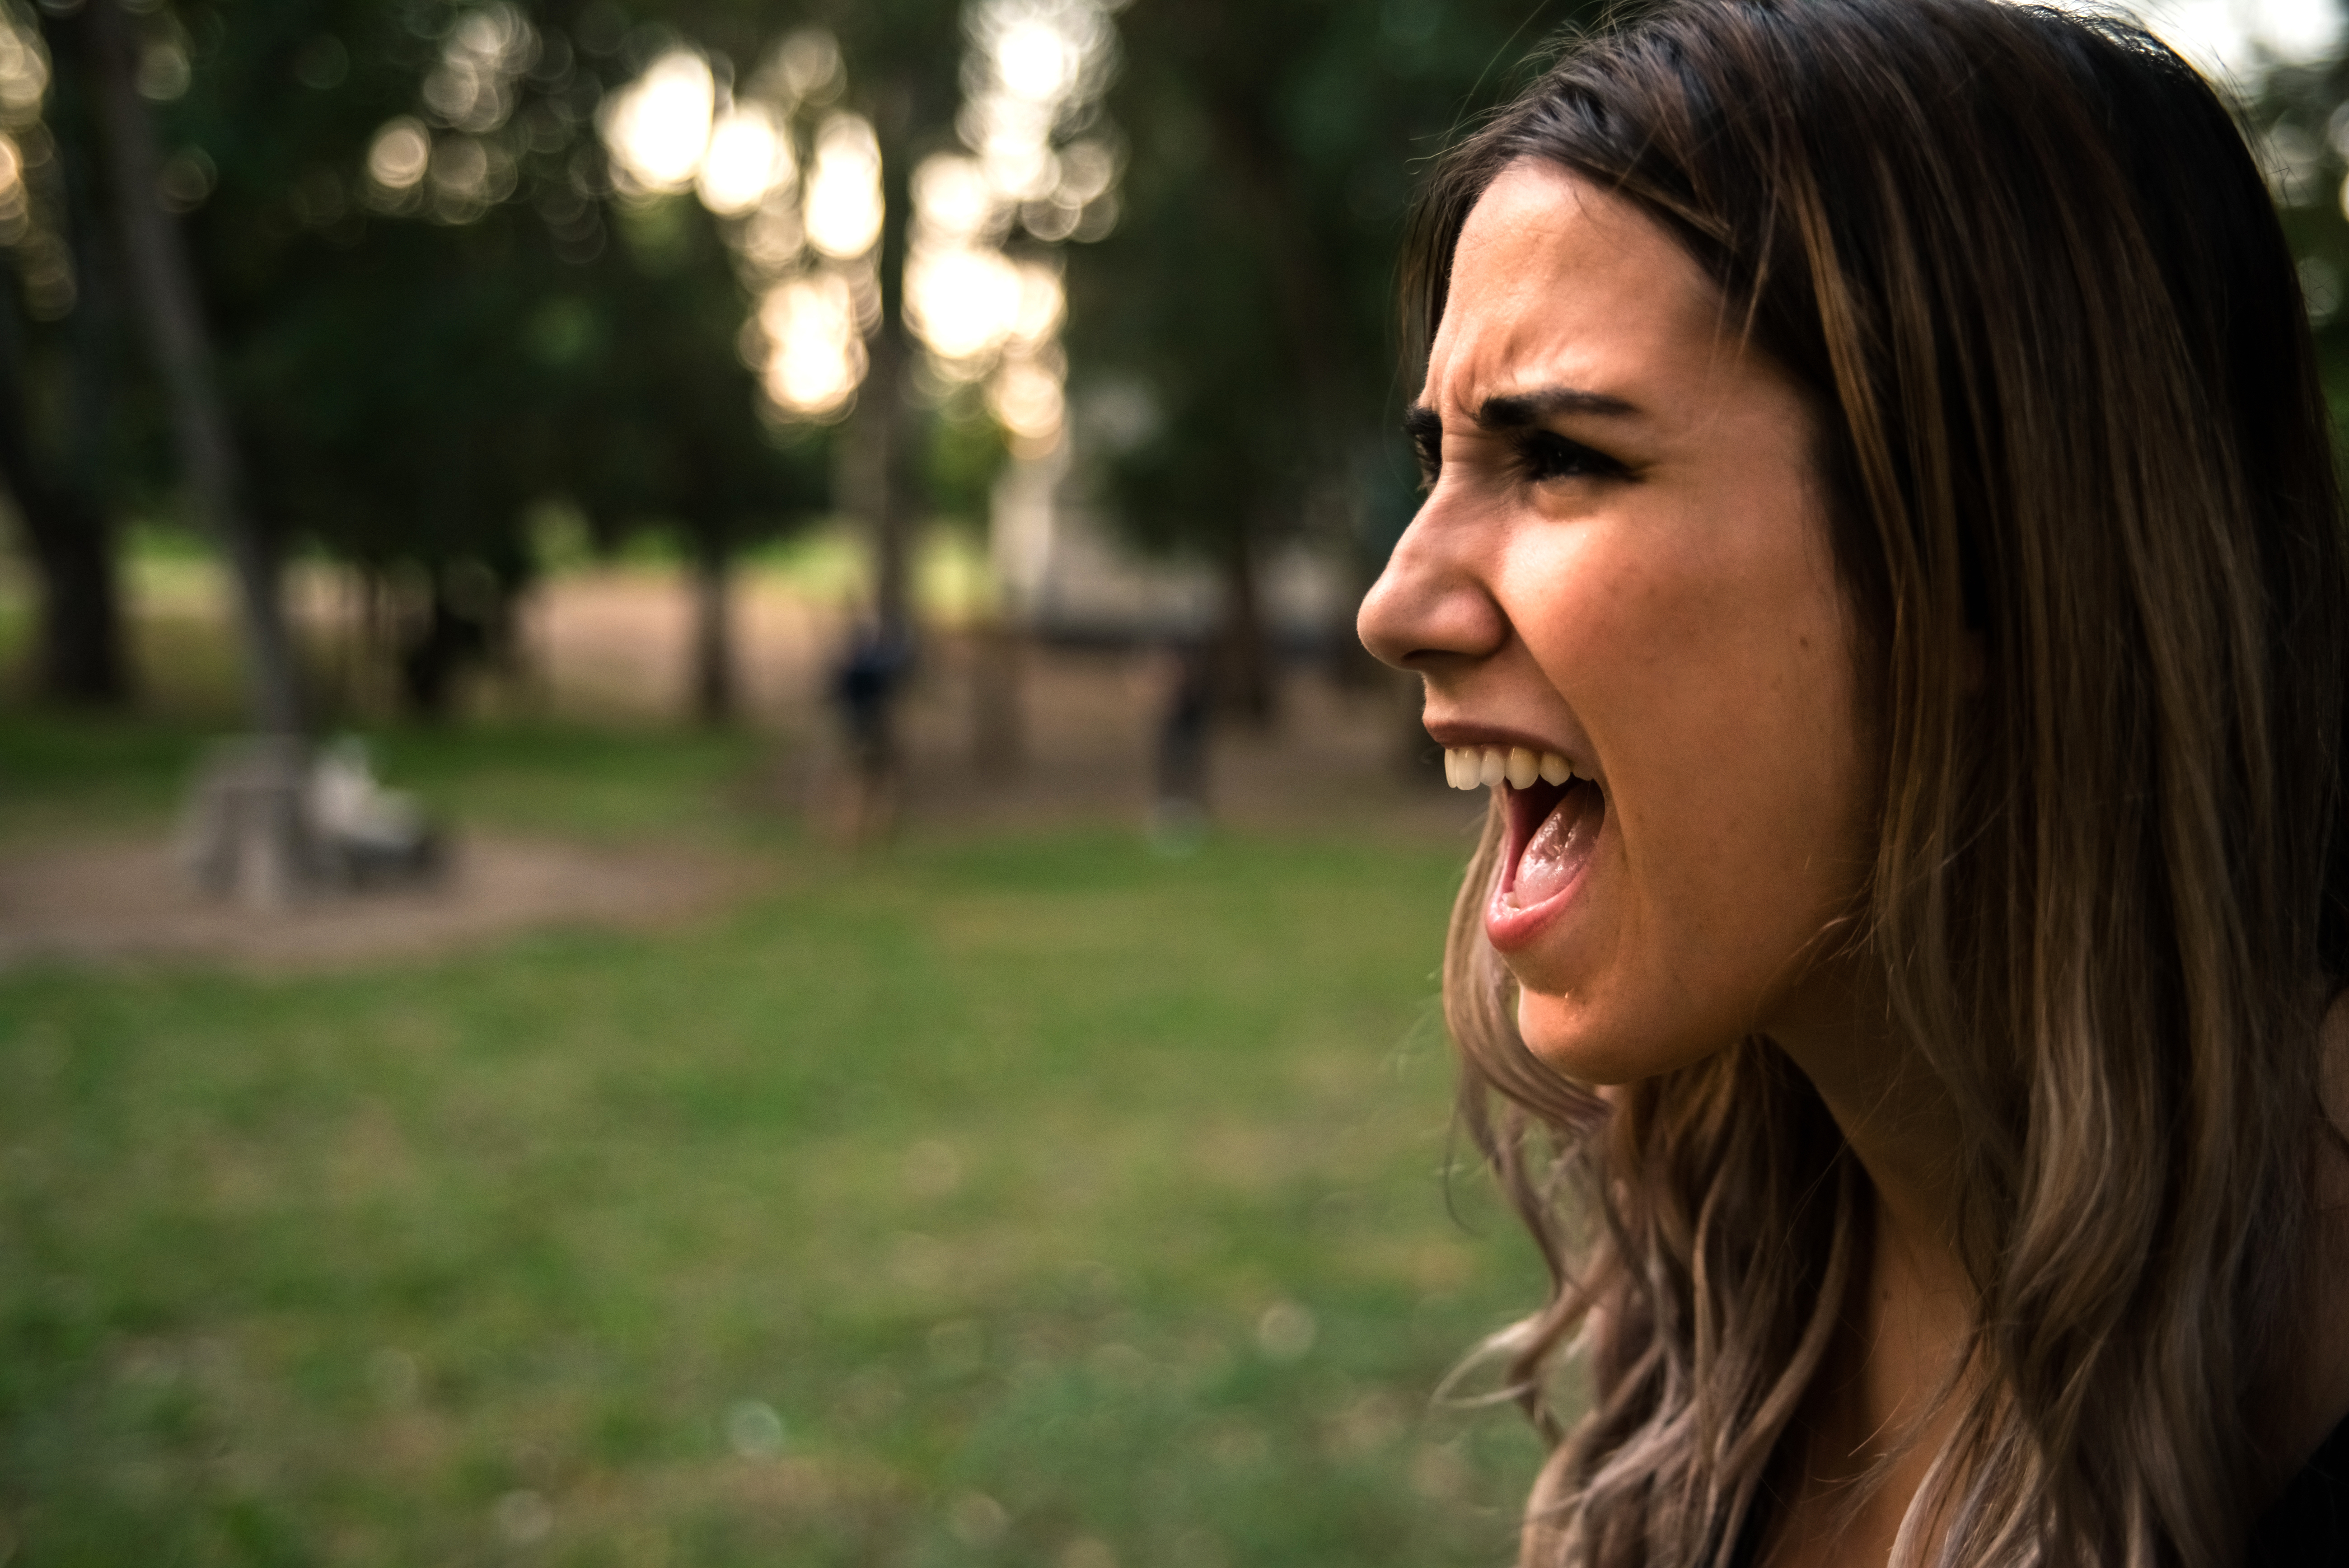 Une femme photographiée avec la bouche ouverte alors qu'elle crie ou hurle | Source : Shutterstock